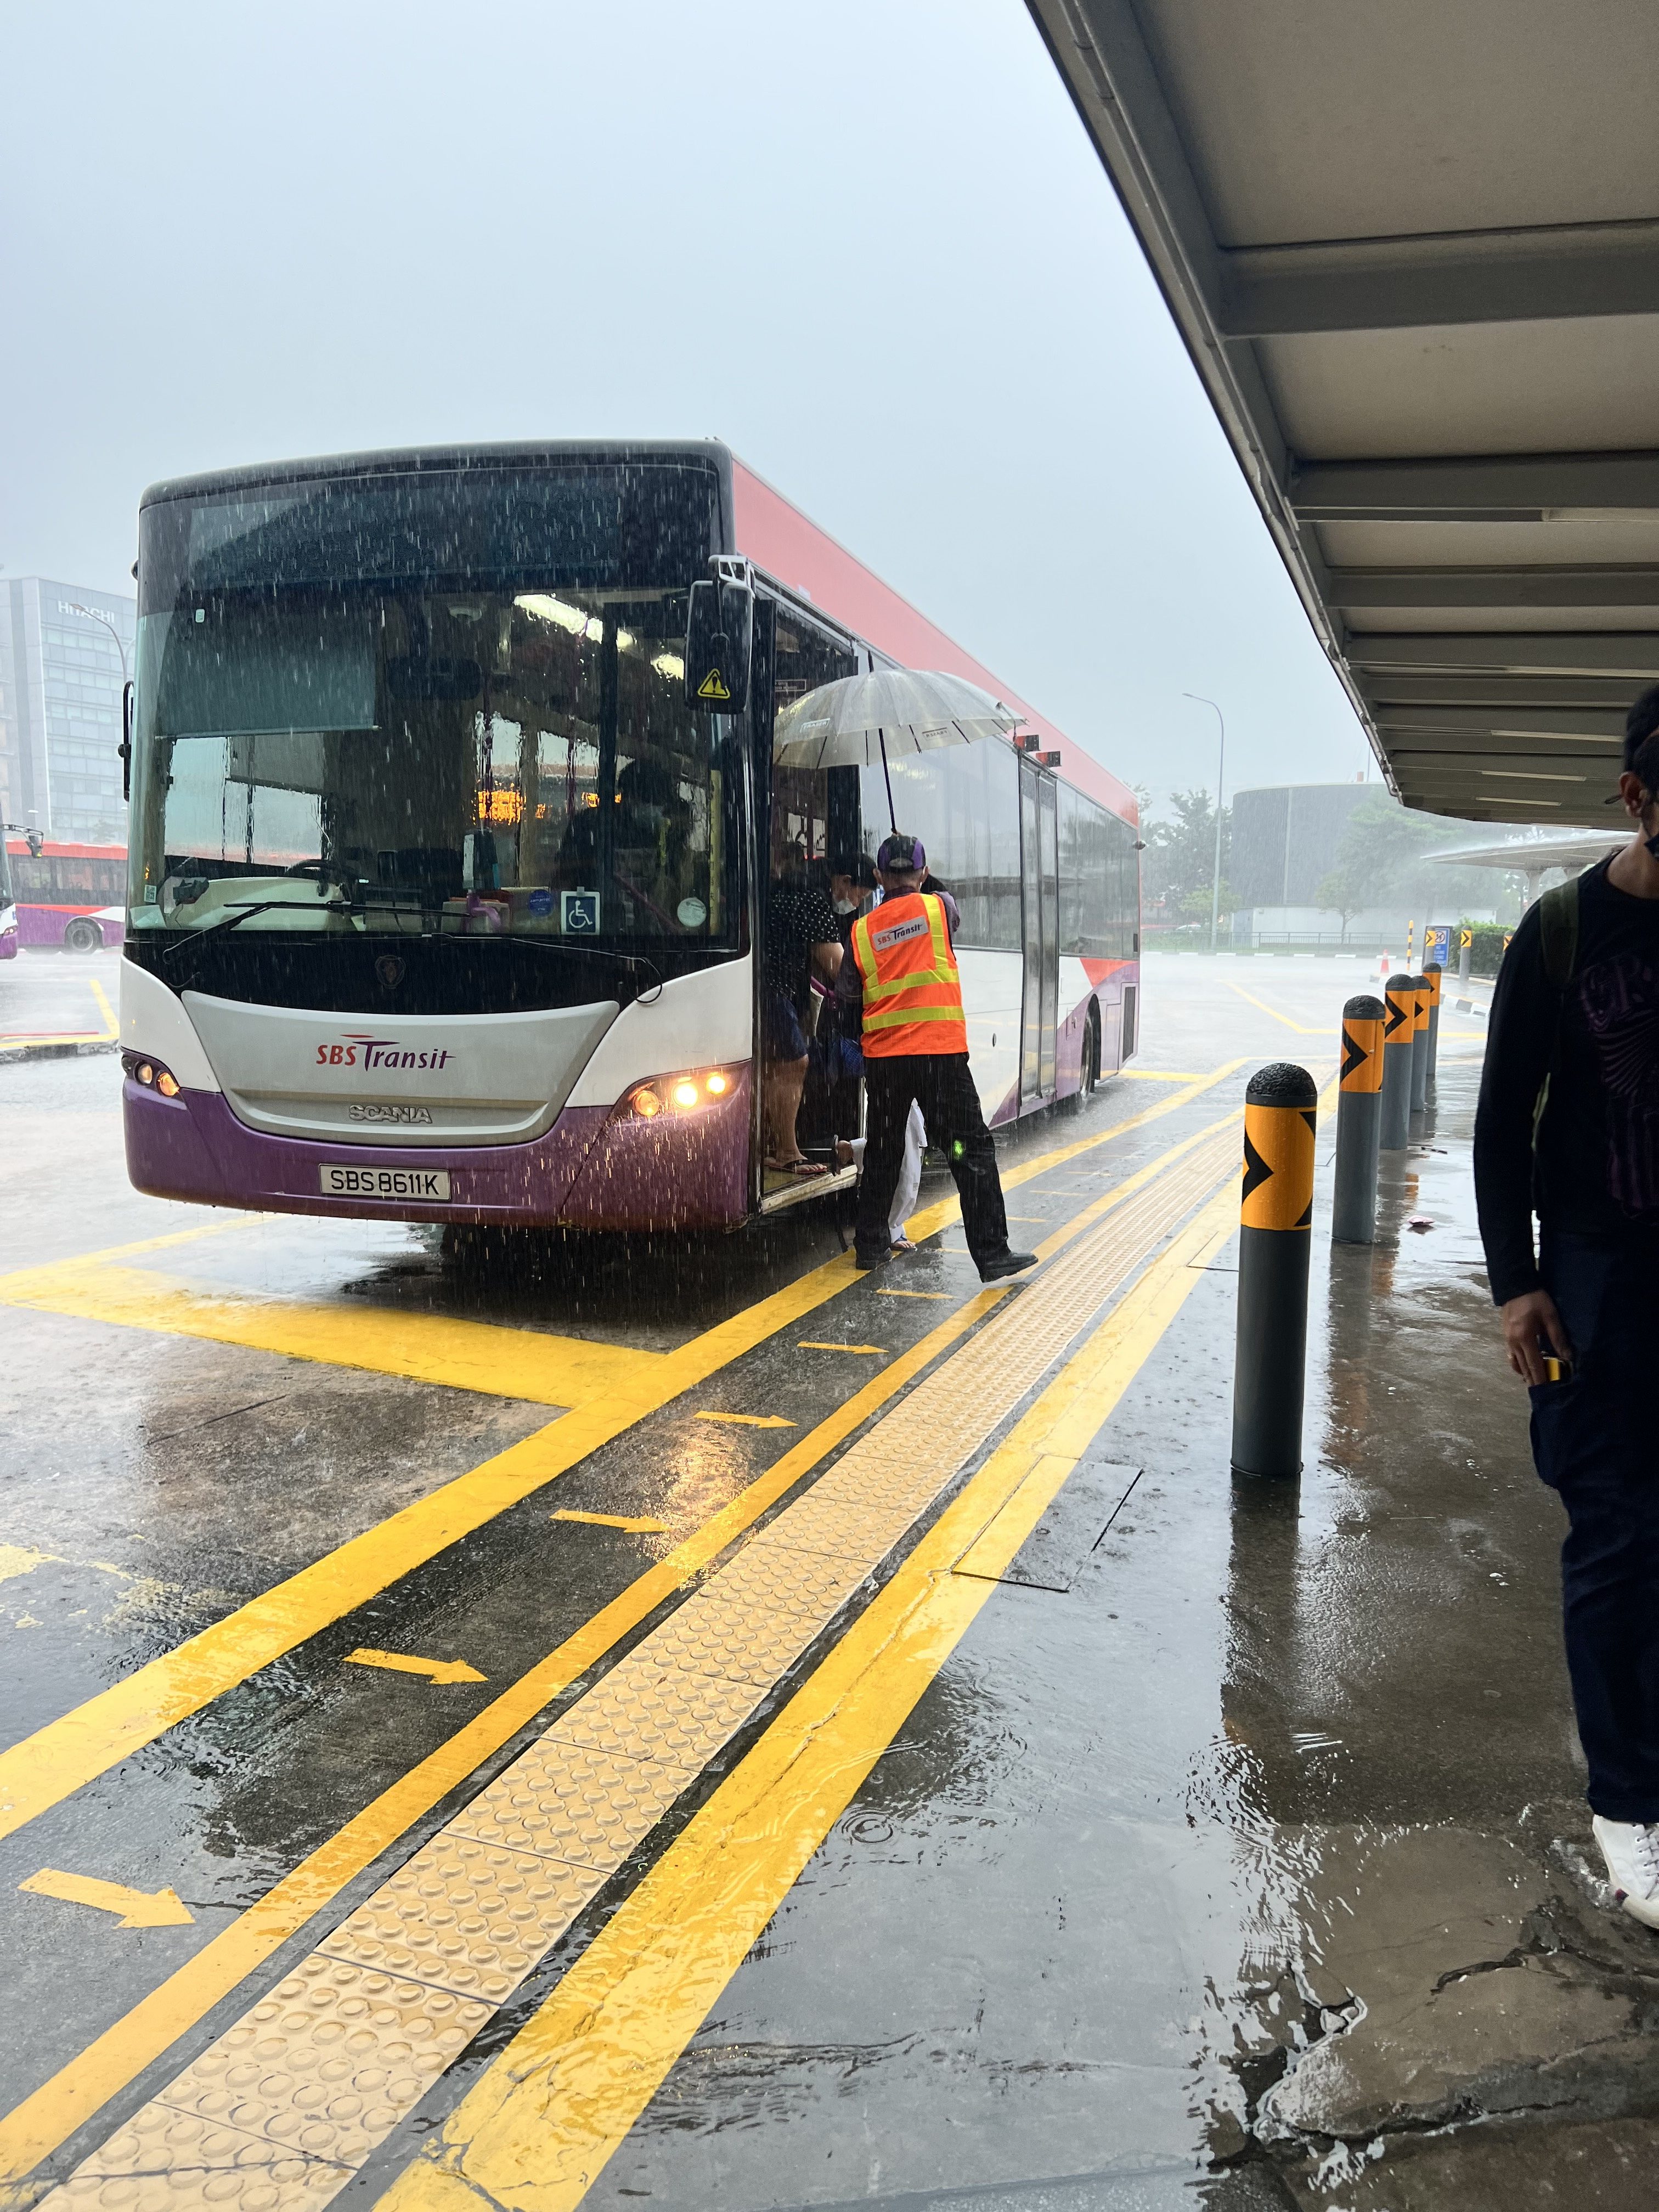 Le capitaine du bus abrite les passagers qui descendent sous la pluie battante pour se rendre à la gare